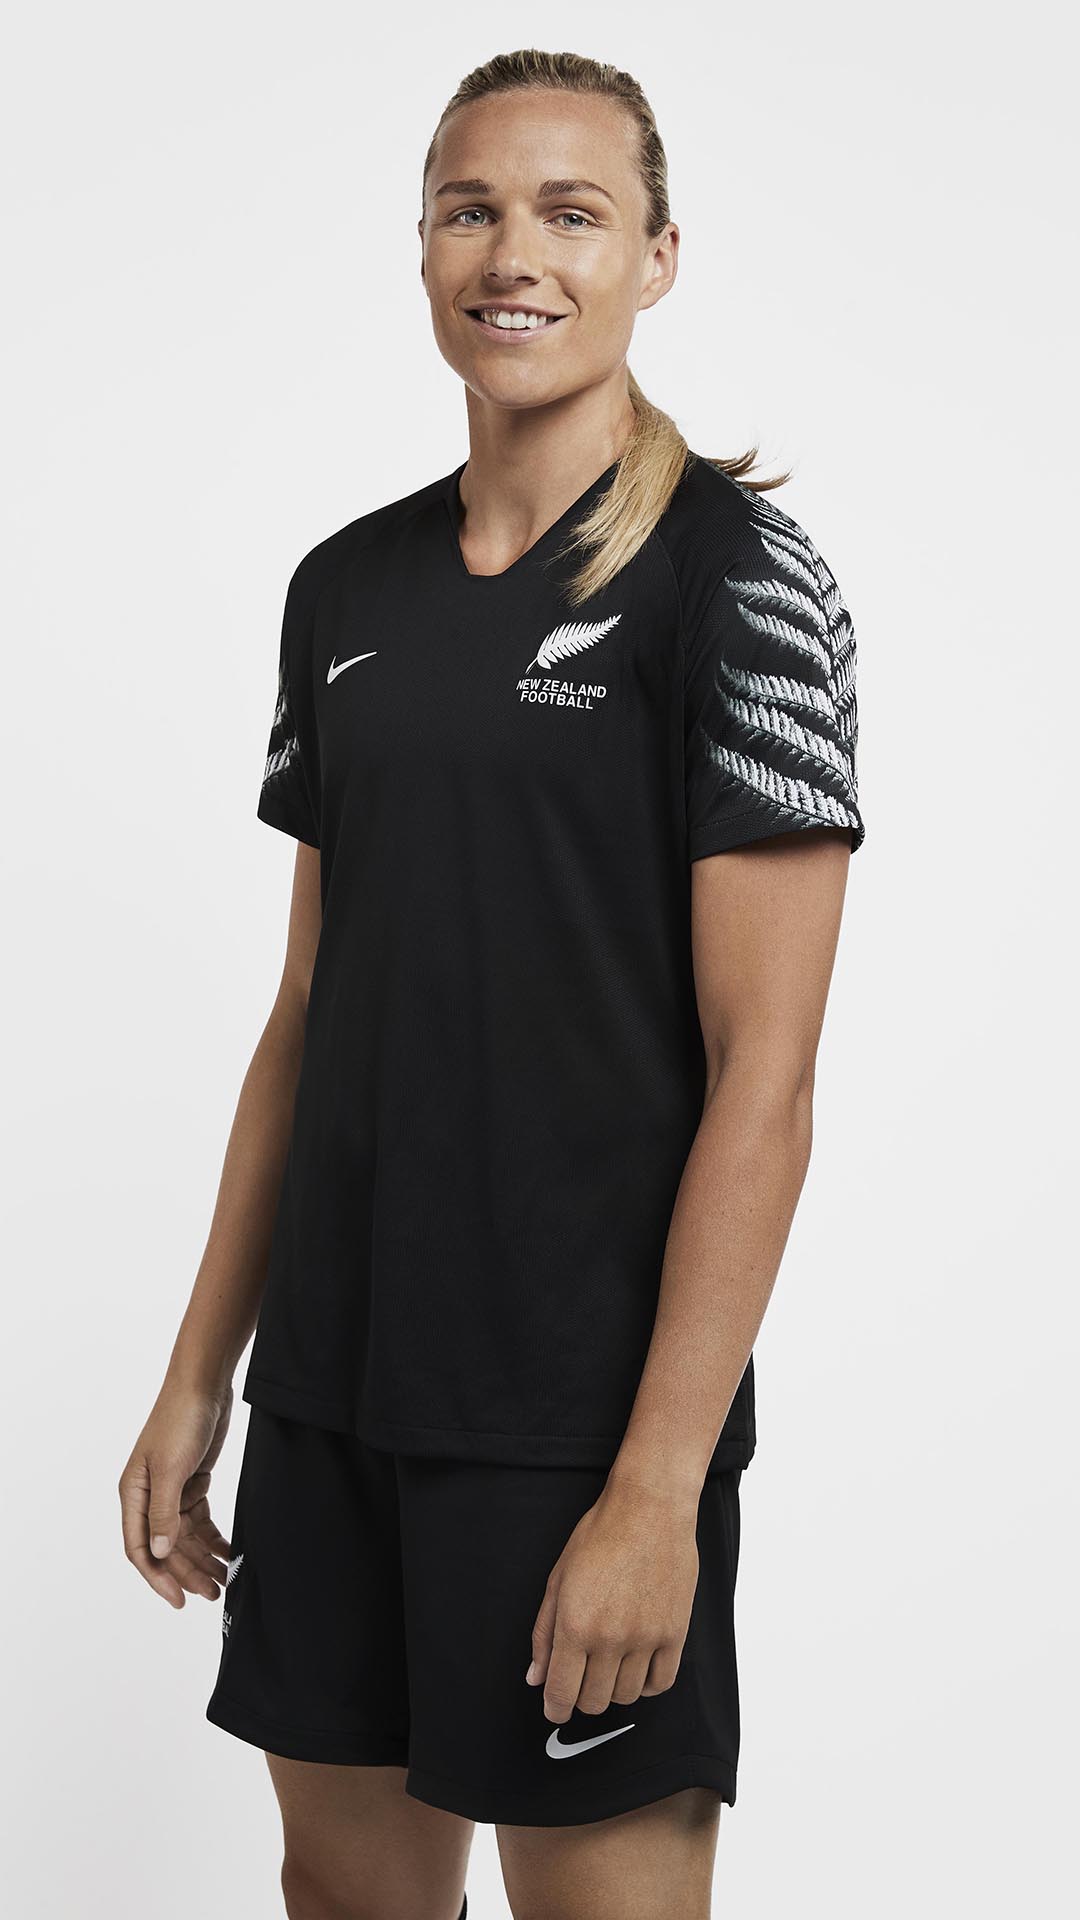 New Zealand's 2019 Women's World Cup Soccer Jerseys